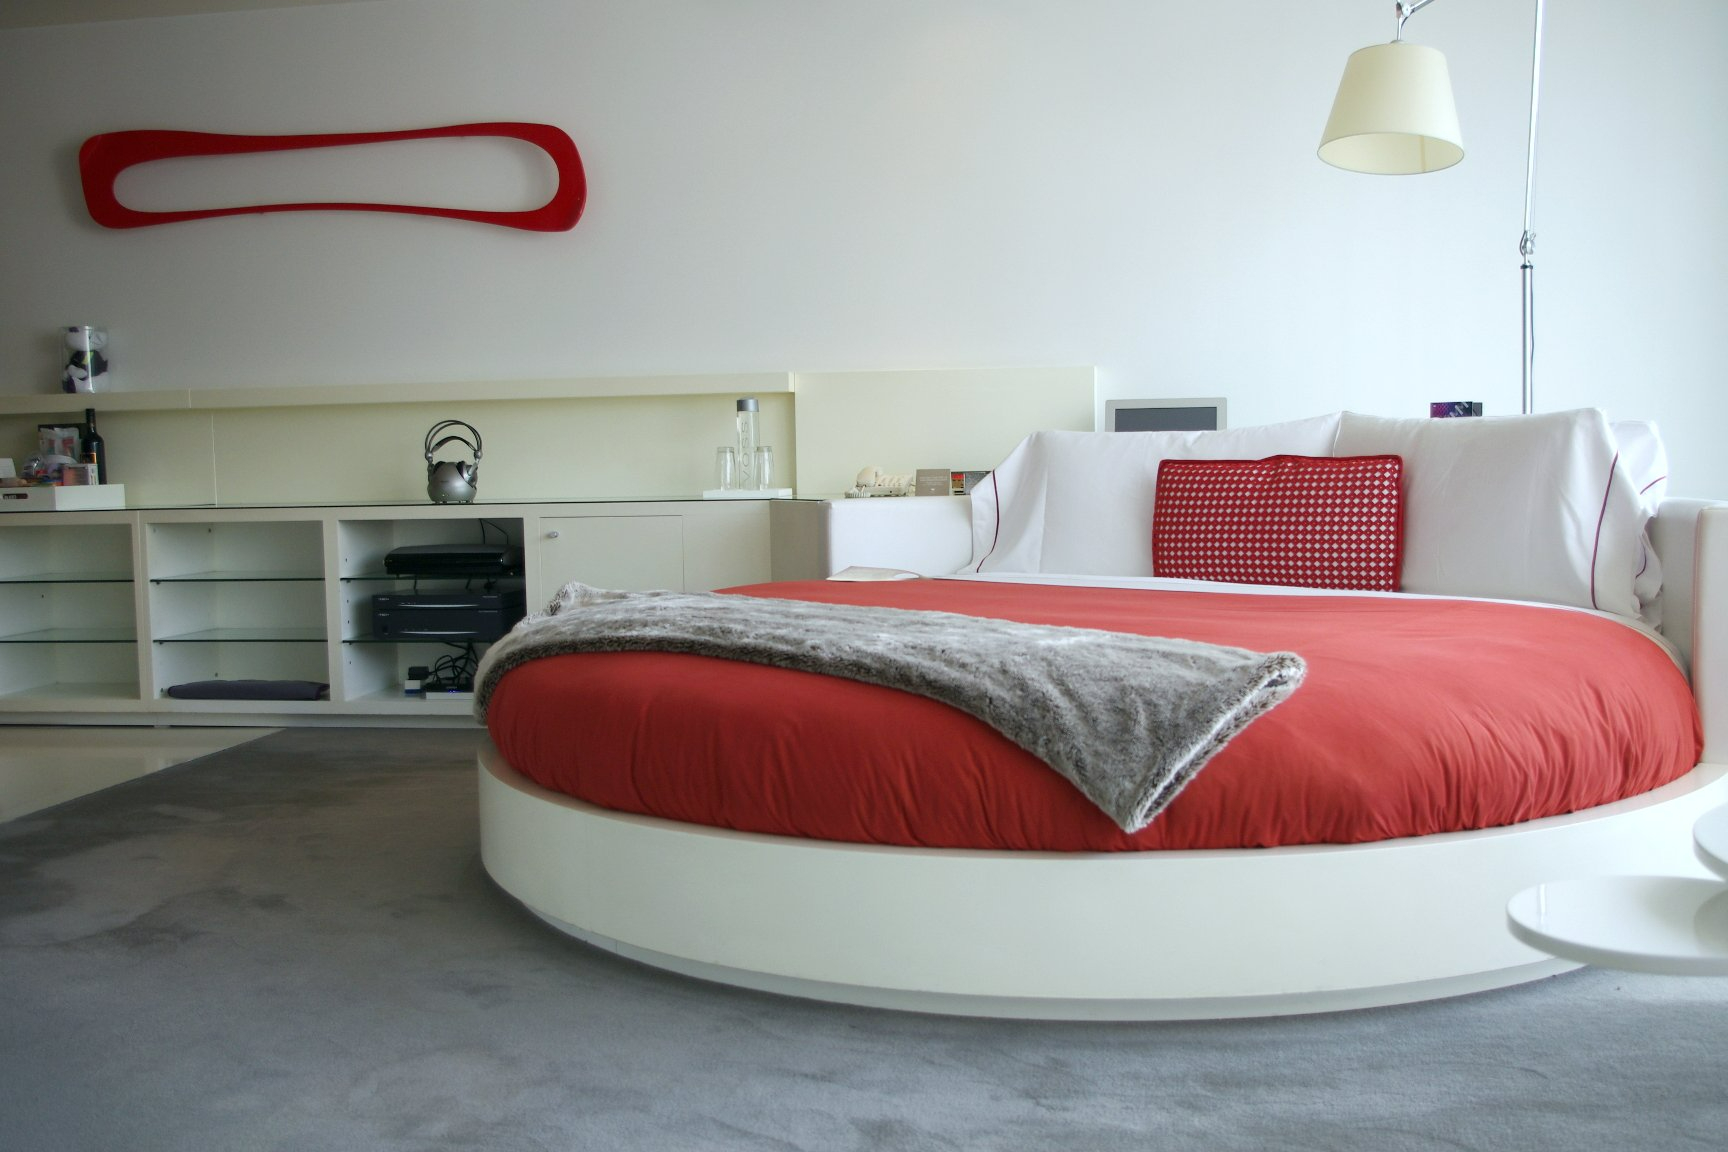 Круглая кровать неизбежно станет центром притяжения взглядов, на нее будет ориентирован остальной дизайн помещения